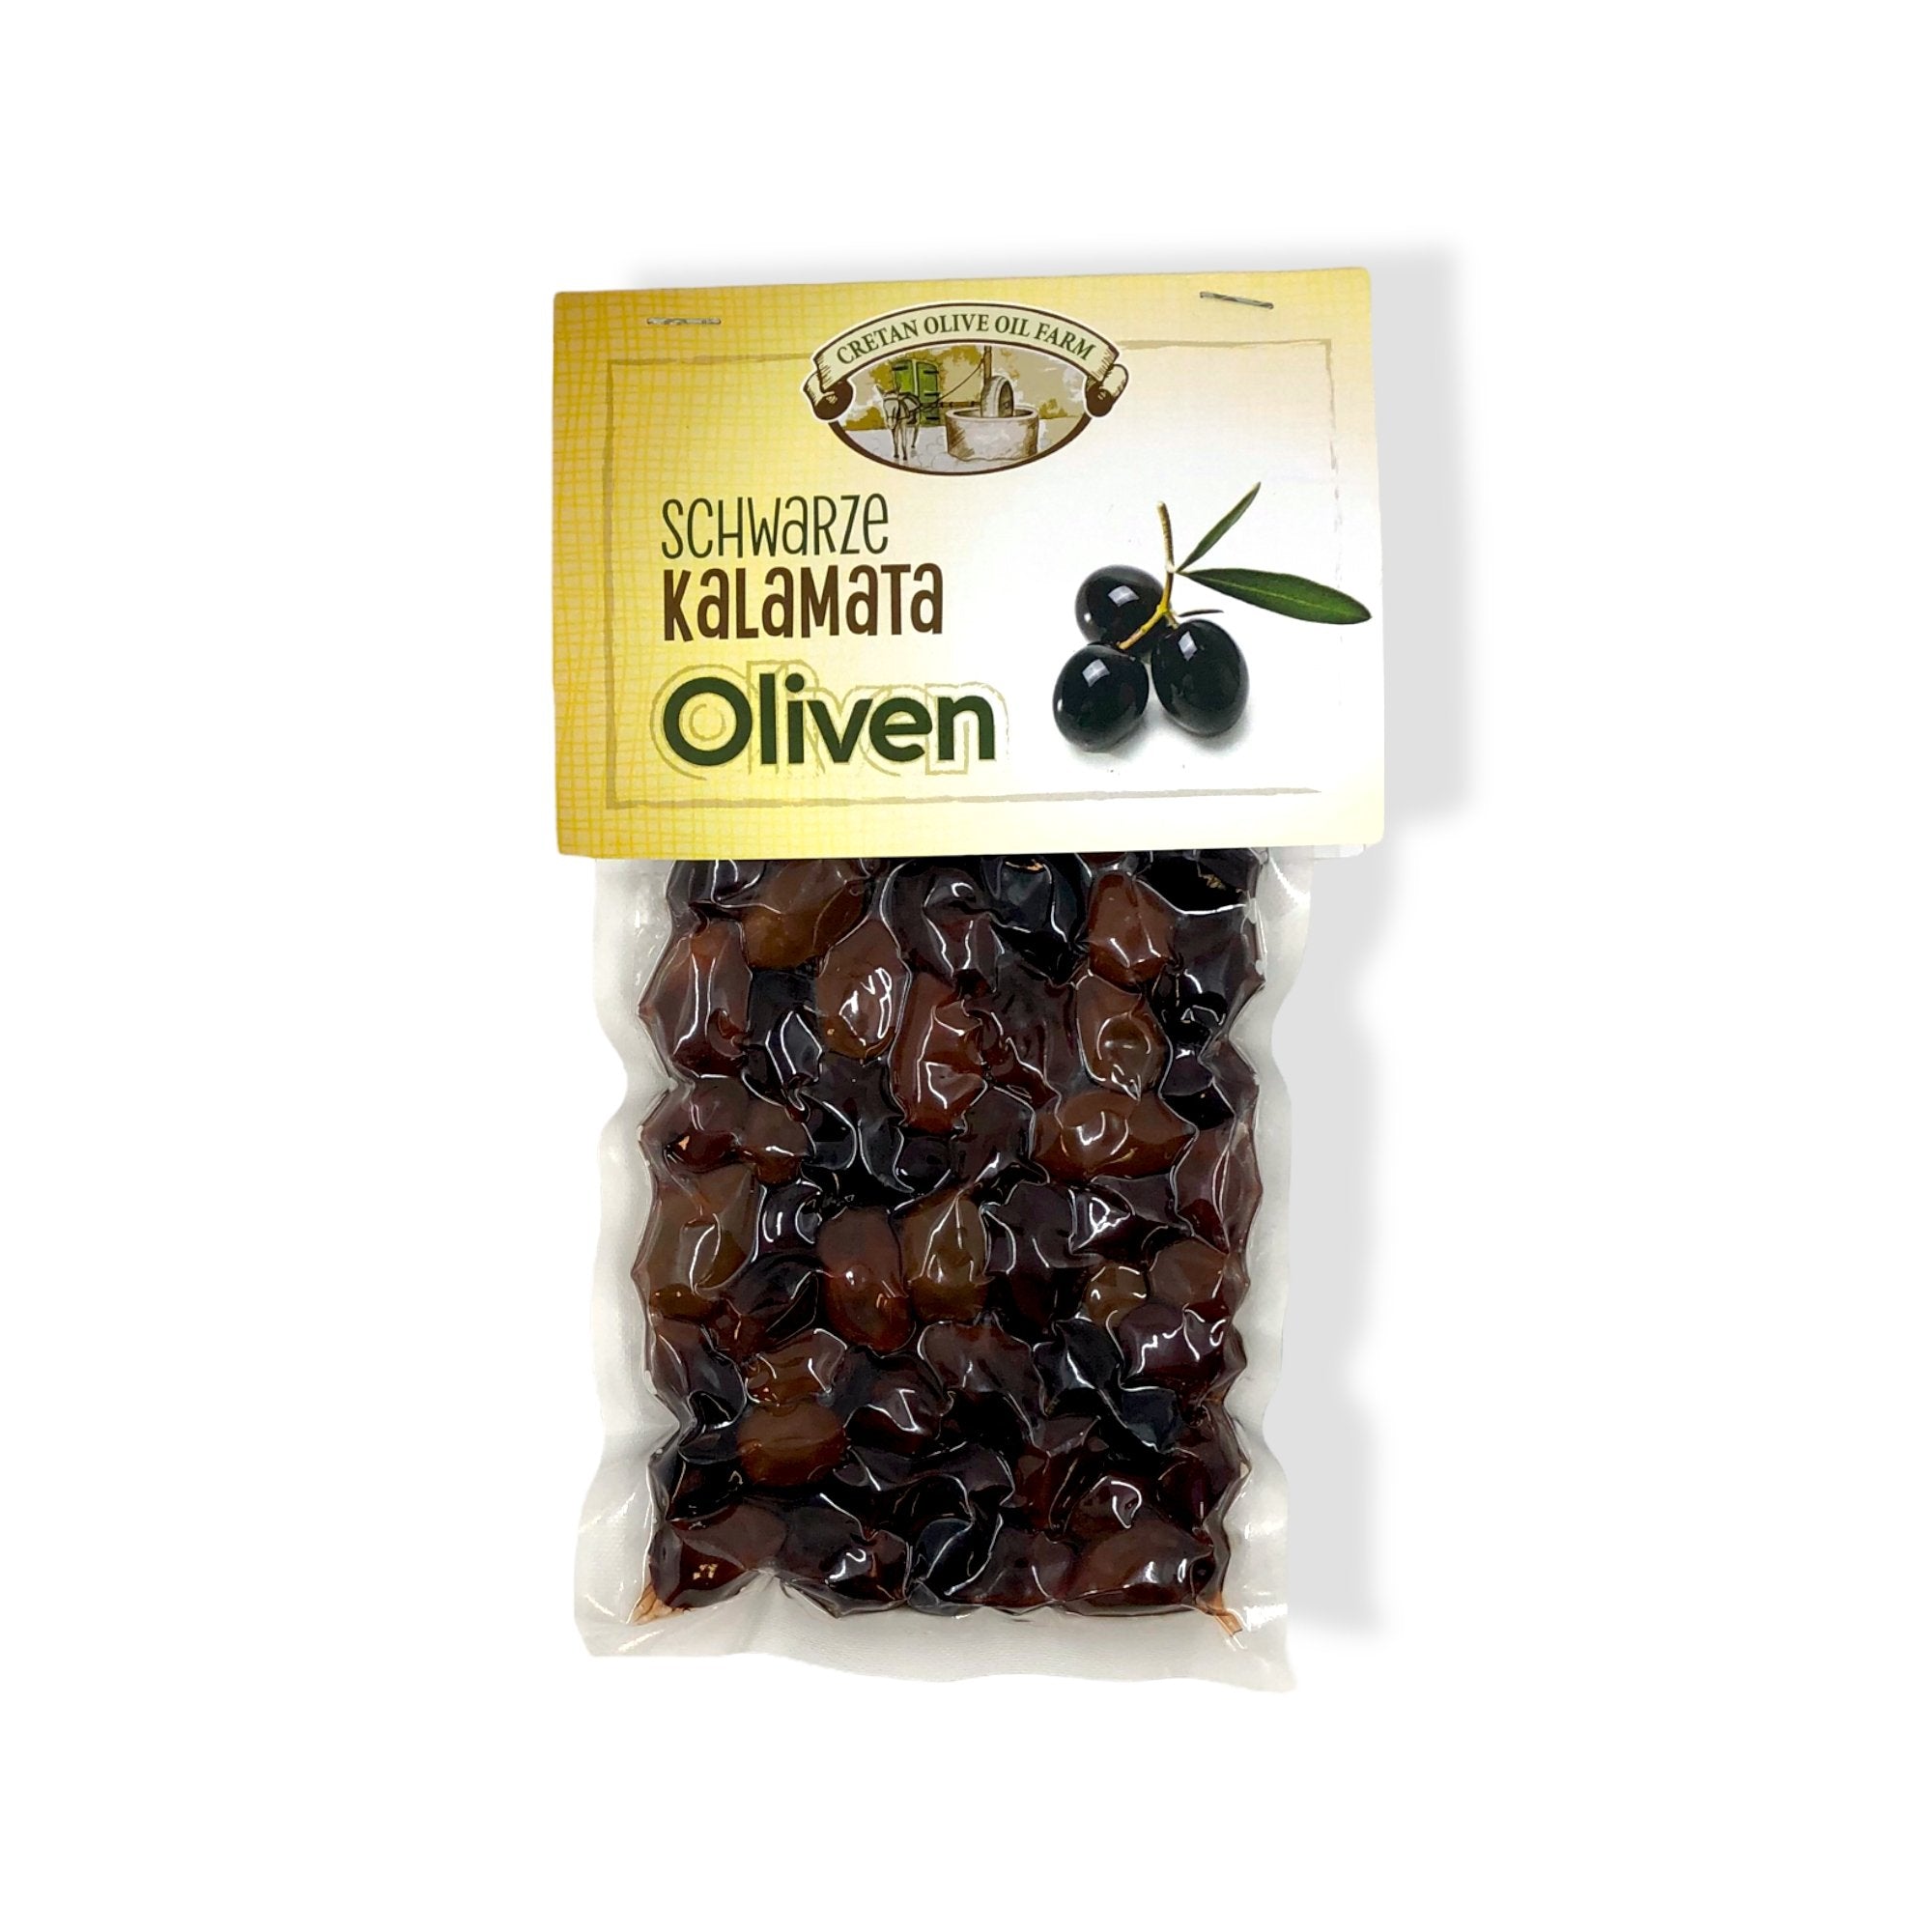 Griechische Kalamata Oliven im Vakuumbeutel - OlivenZauber - Olivenöl neu erleben